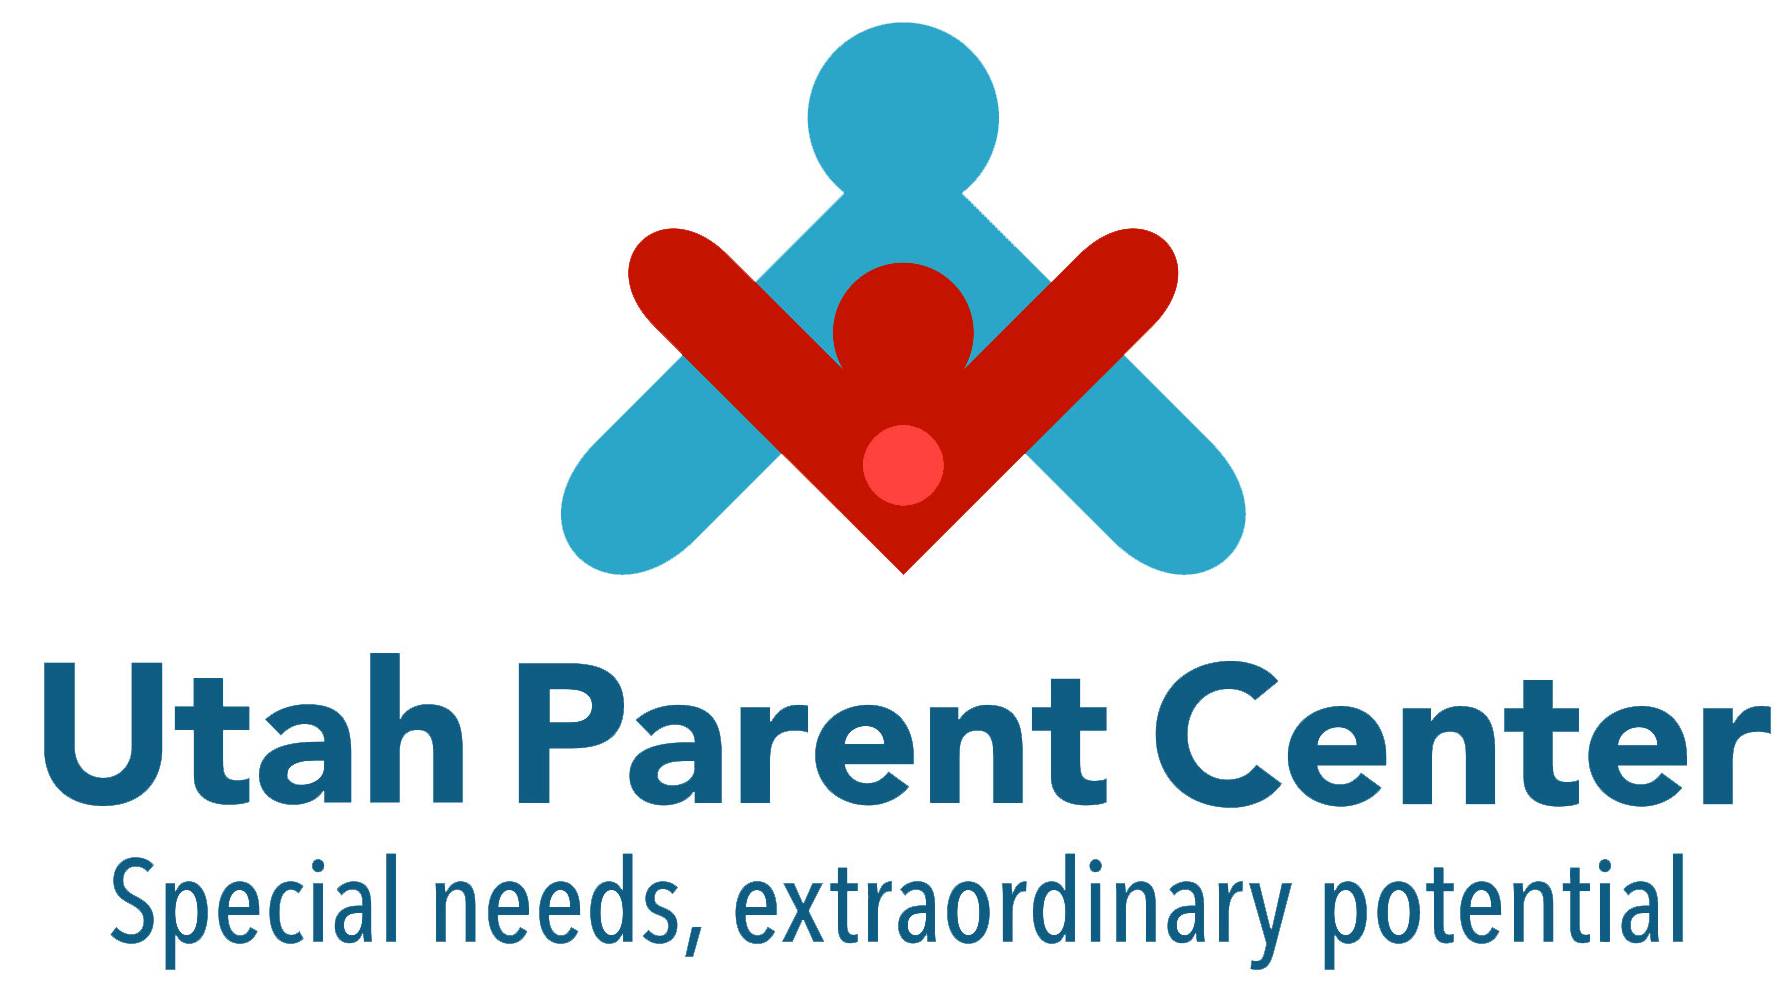 Utah Parent Center logo